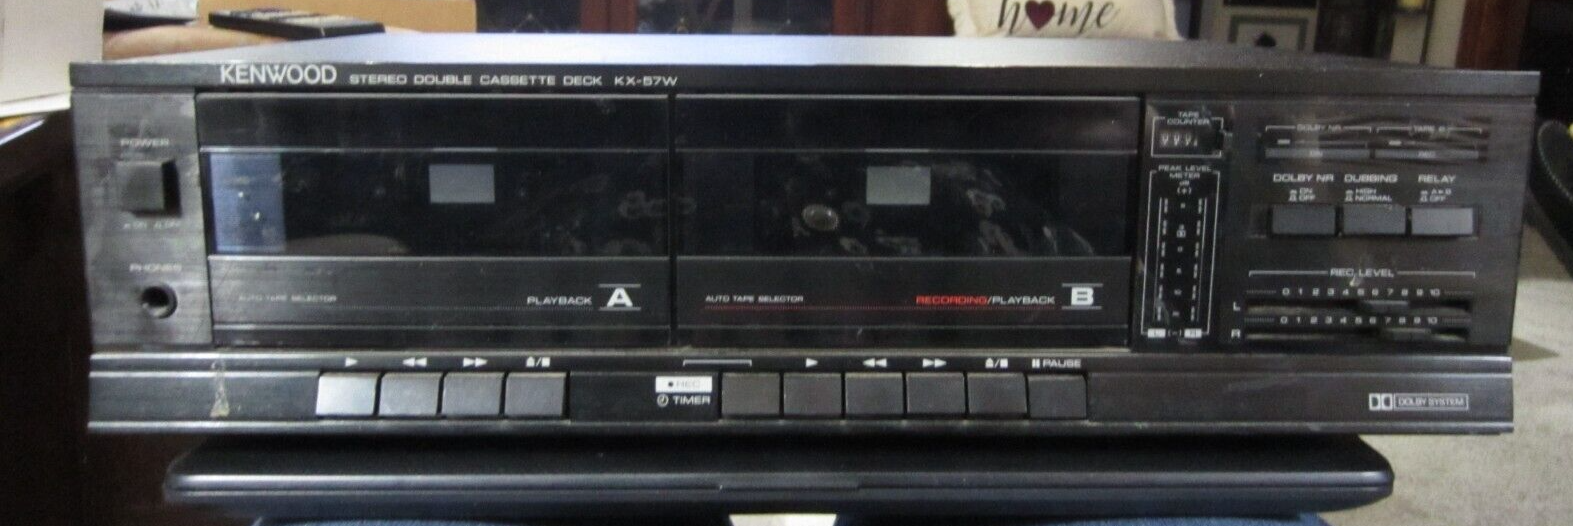 Kenwood KX-57W Double Cassette Stereo Tape Deck - $79.19